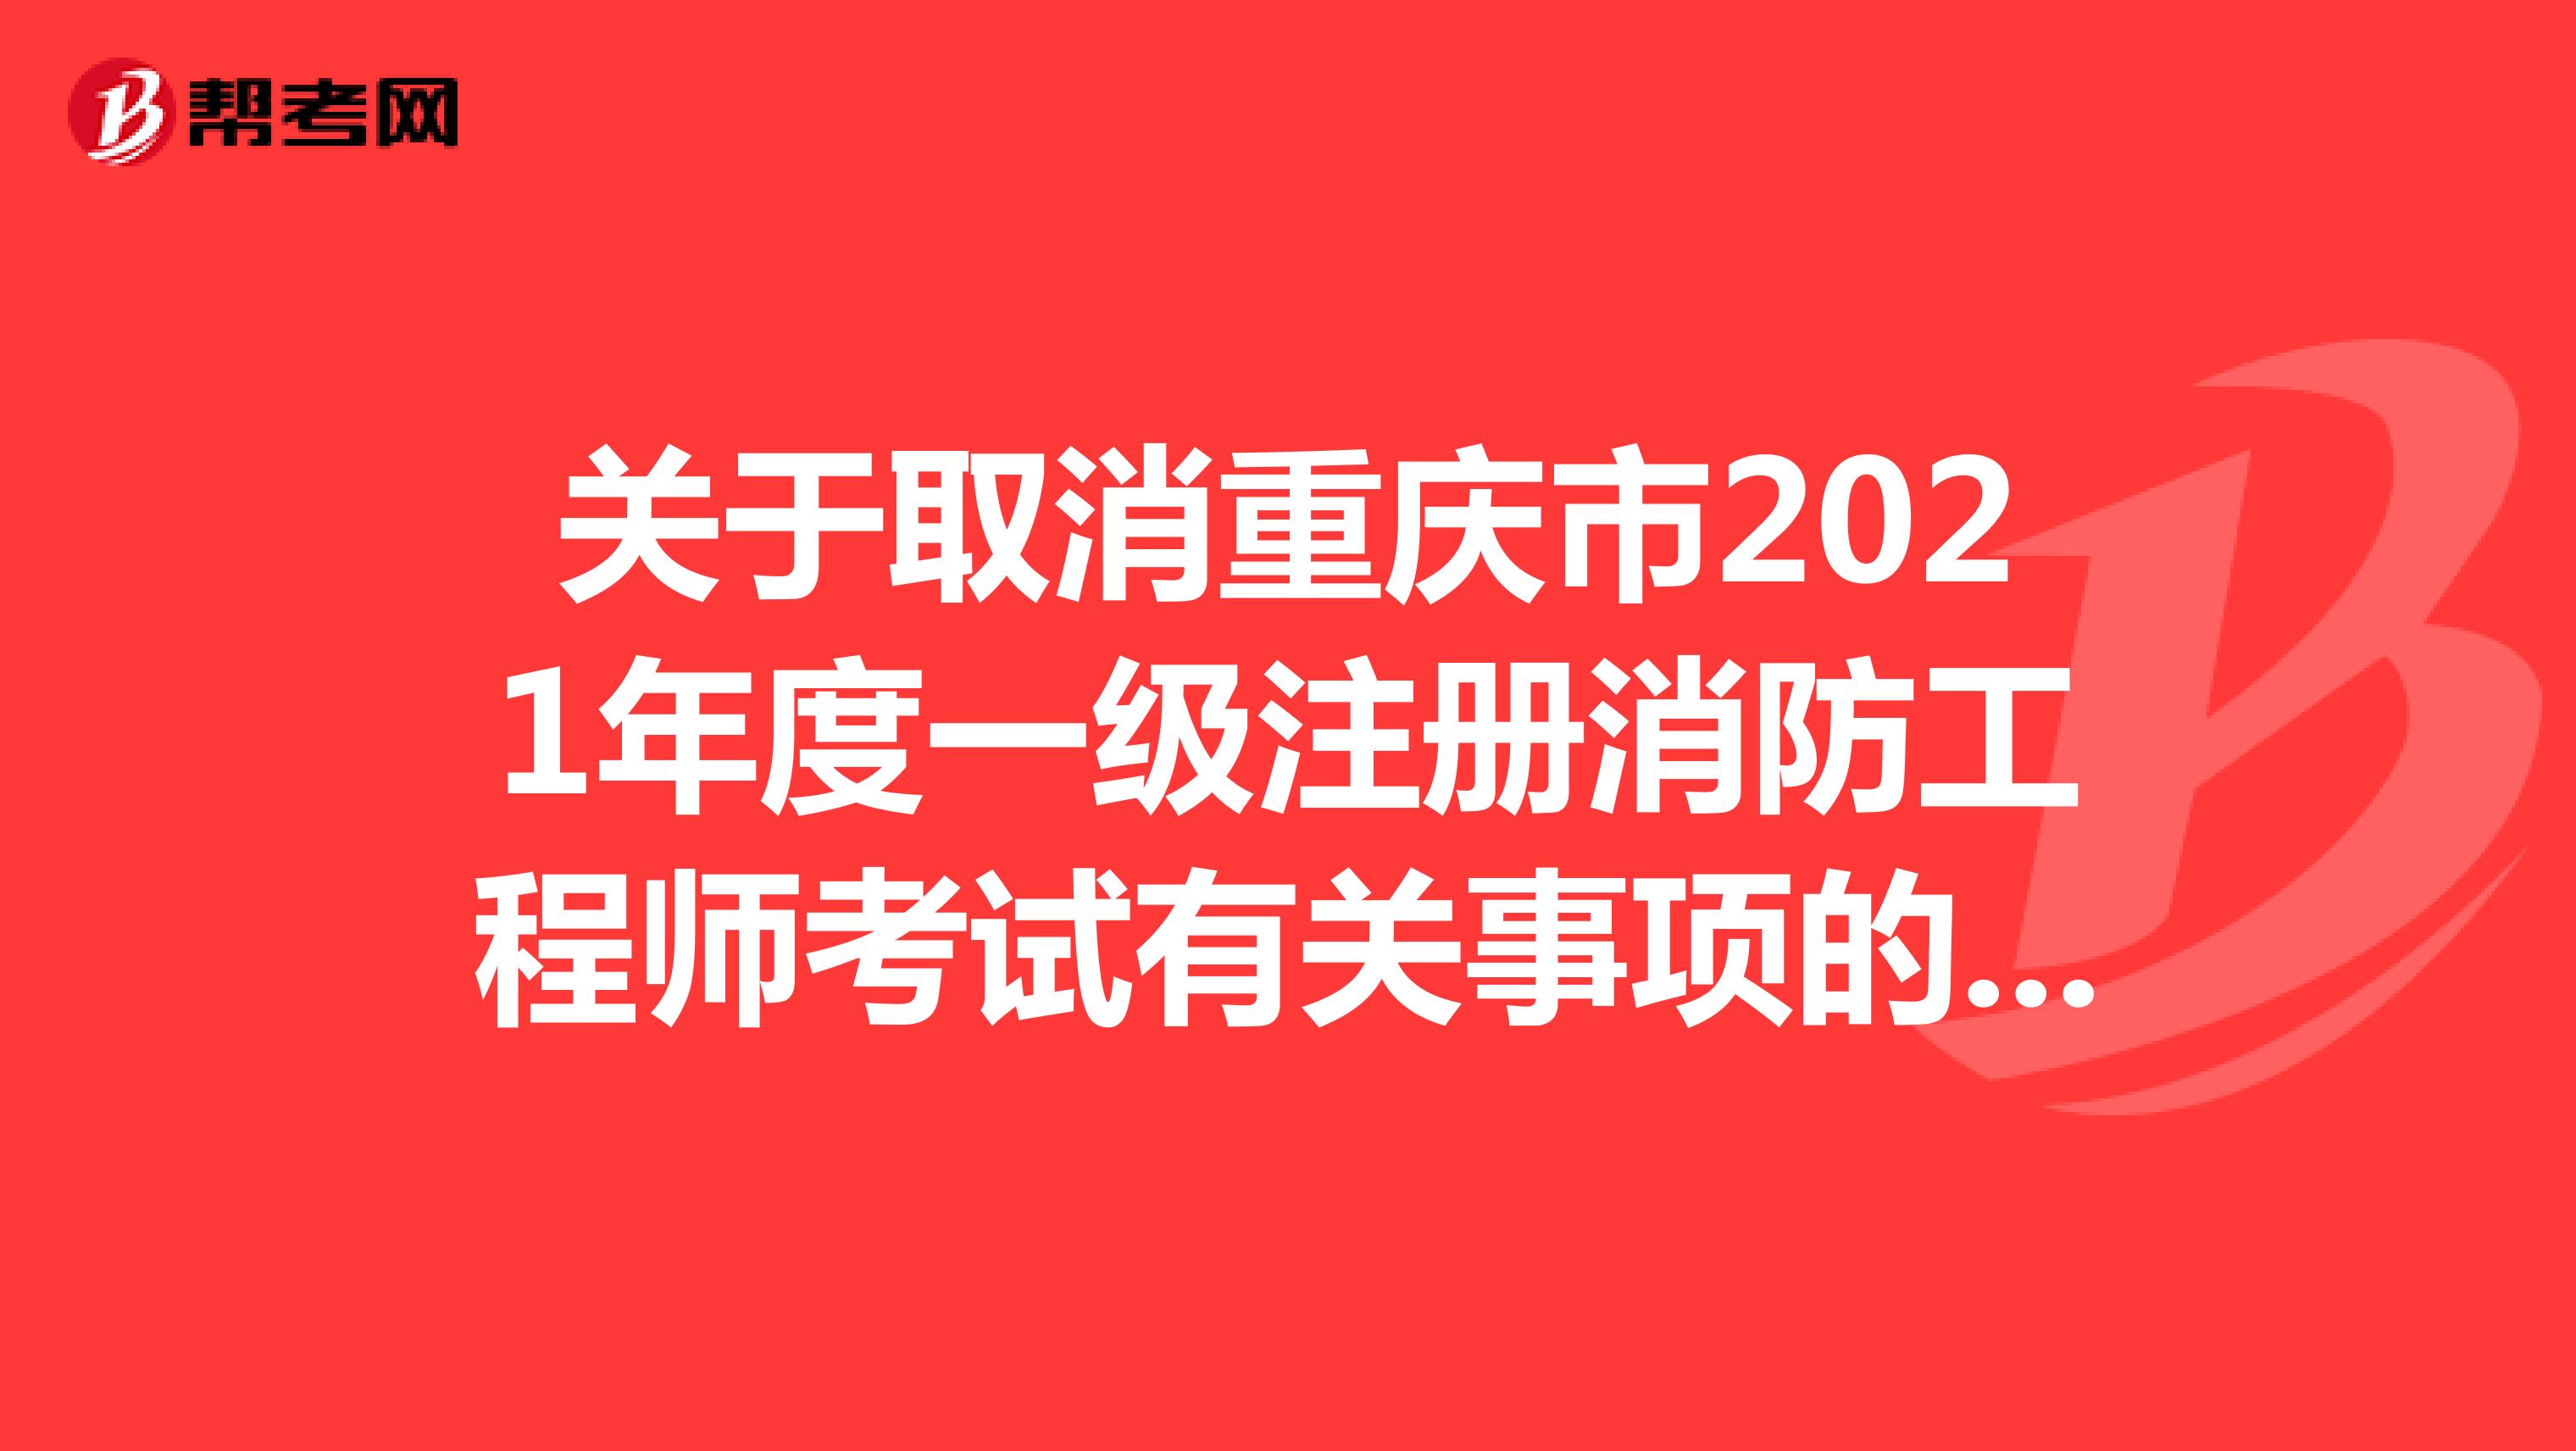 关于取消重庆市2021年度一级注册消防工程师考试有关事项的通知